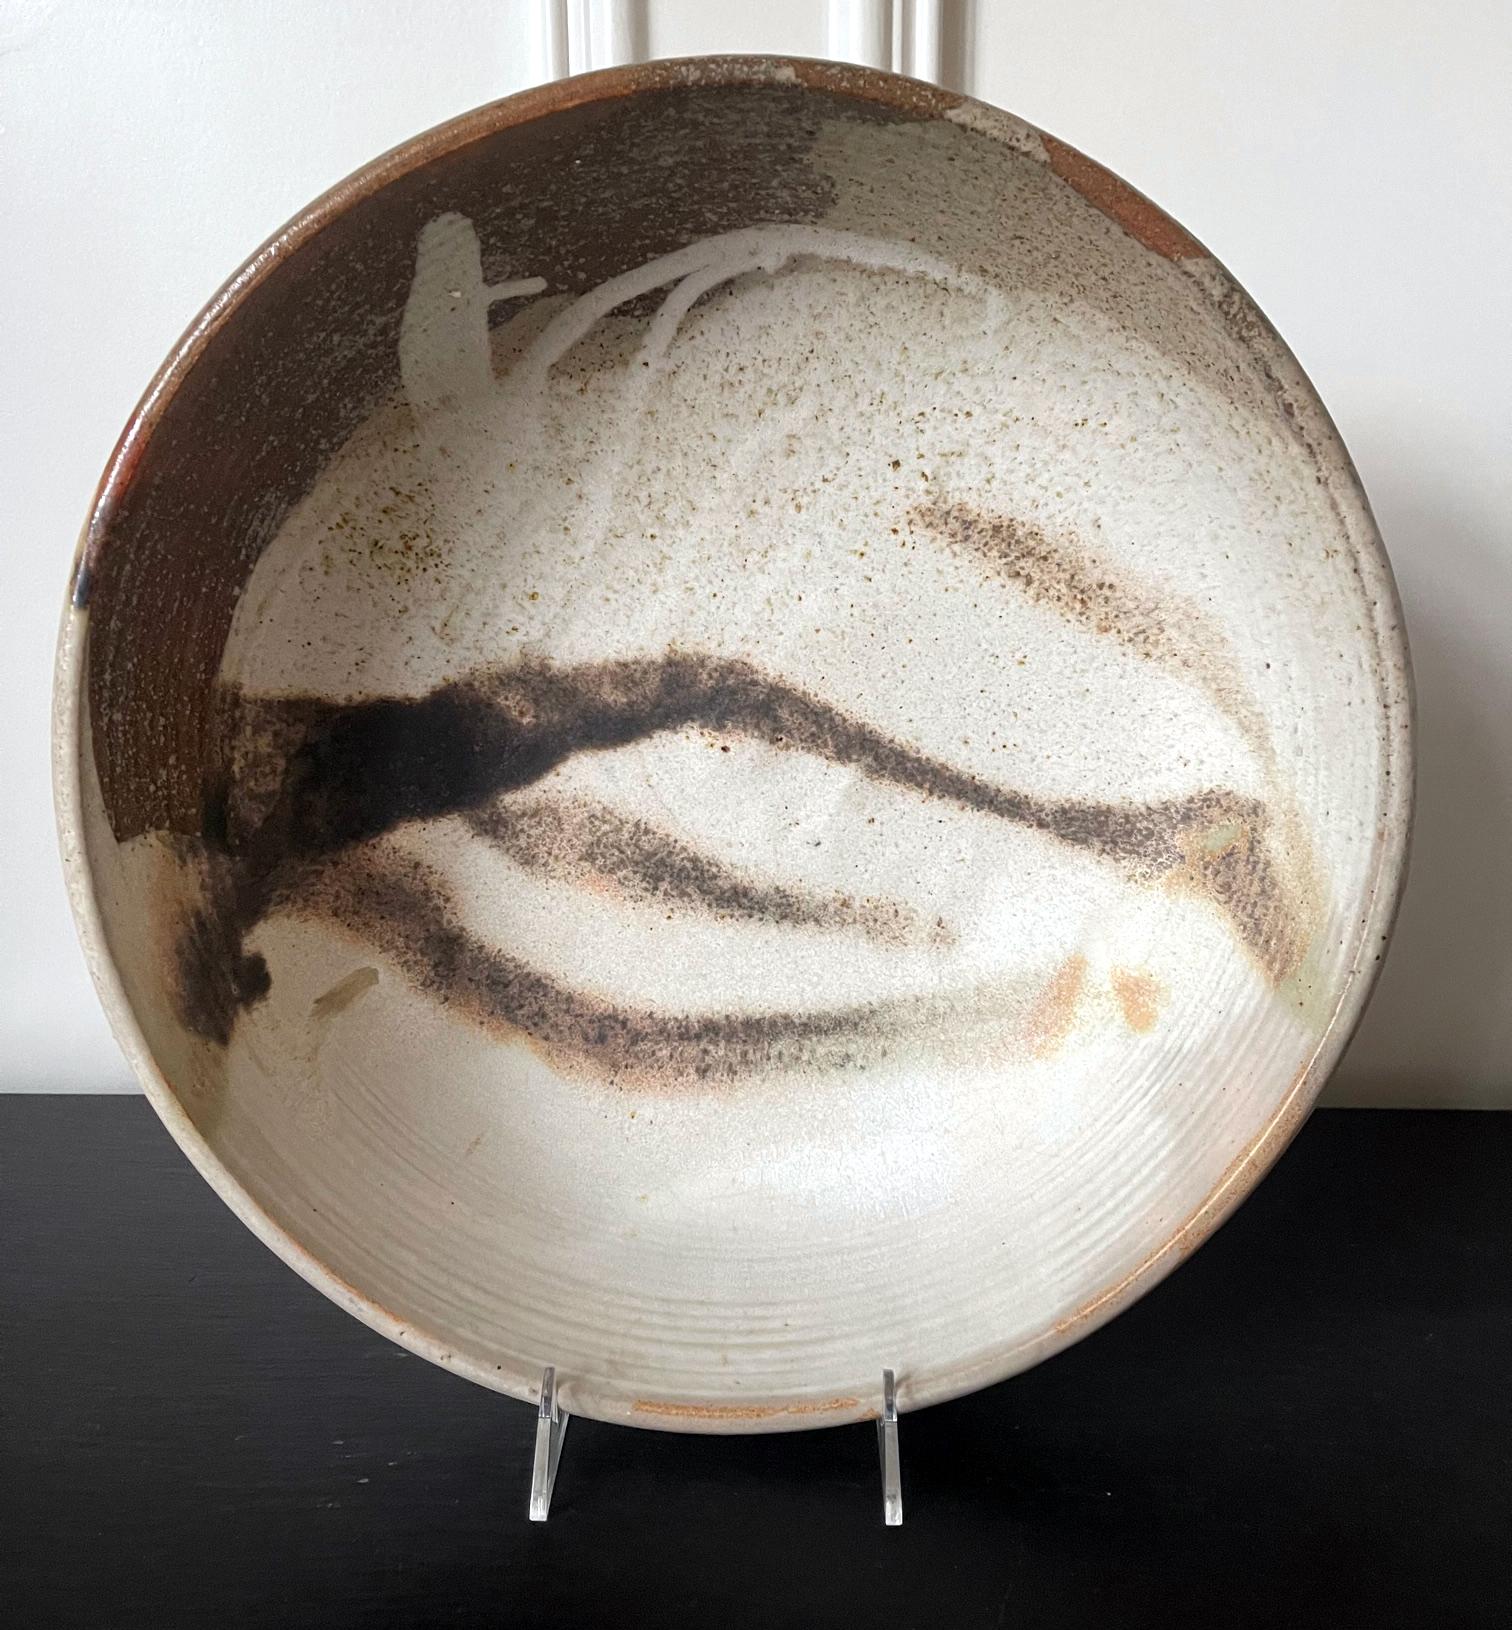 Eine große Keramikschale der japanisch-amerikanischen Künstlerin Toshiko Takaezu (Amerikanerin, 1922 - 2011). Die tiefe Form der Schale mit ihrem robusten, dickwandigen Korpus, der von einem kurzen, runden Fußring getragen wird, ist als